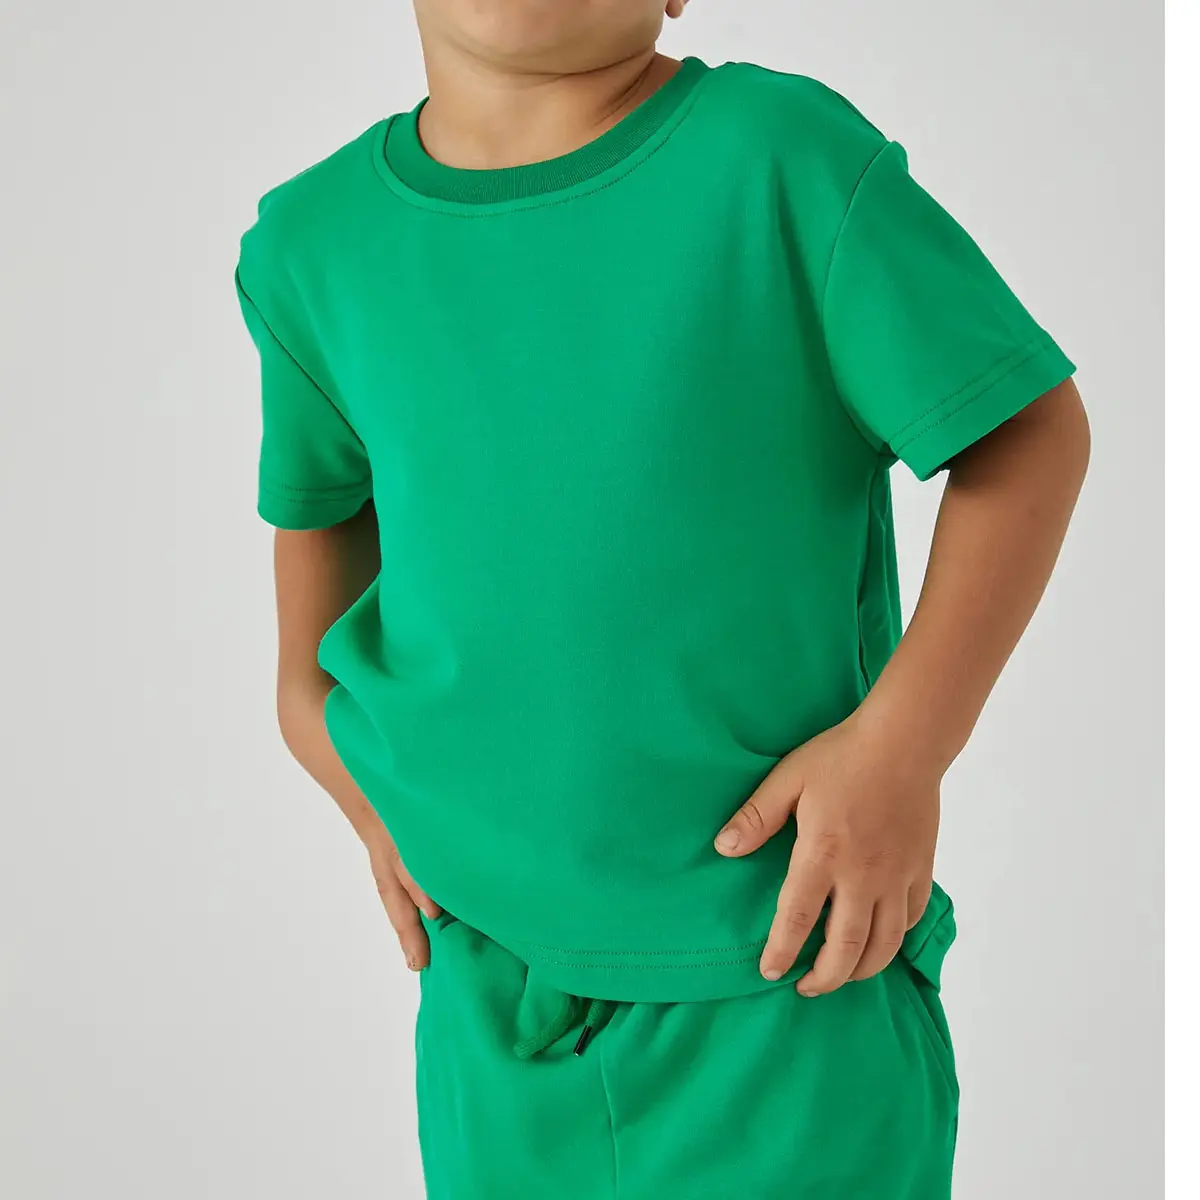 Одежда для детей, От 2 до 14 лет, новый дизайн, Детская эксклюзивная одежда для малышей; Детские 100% Хлопковая полосатая футболка-поло рубашки для мальчиков